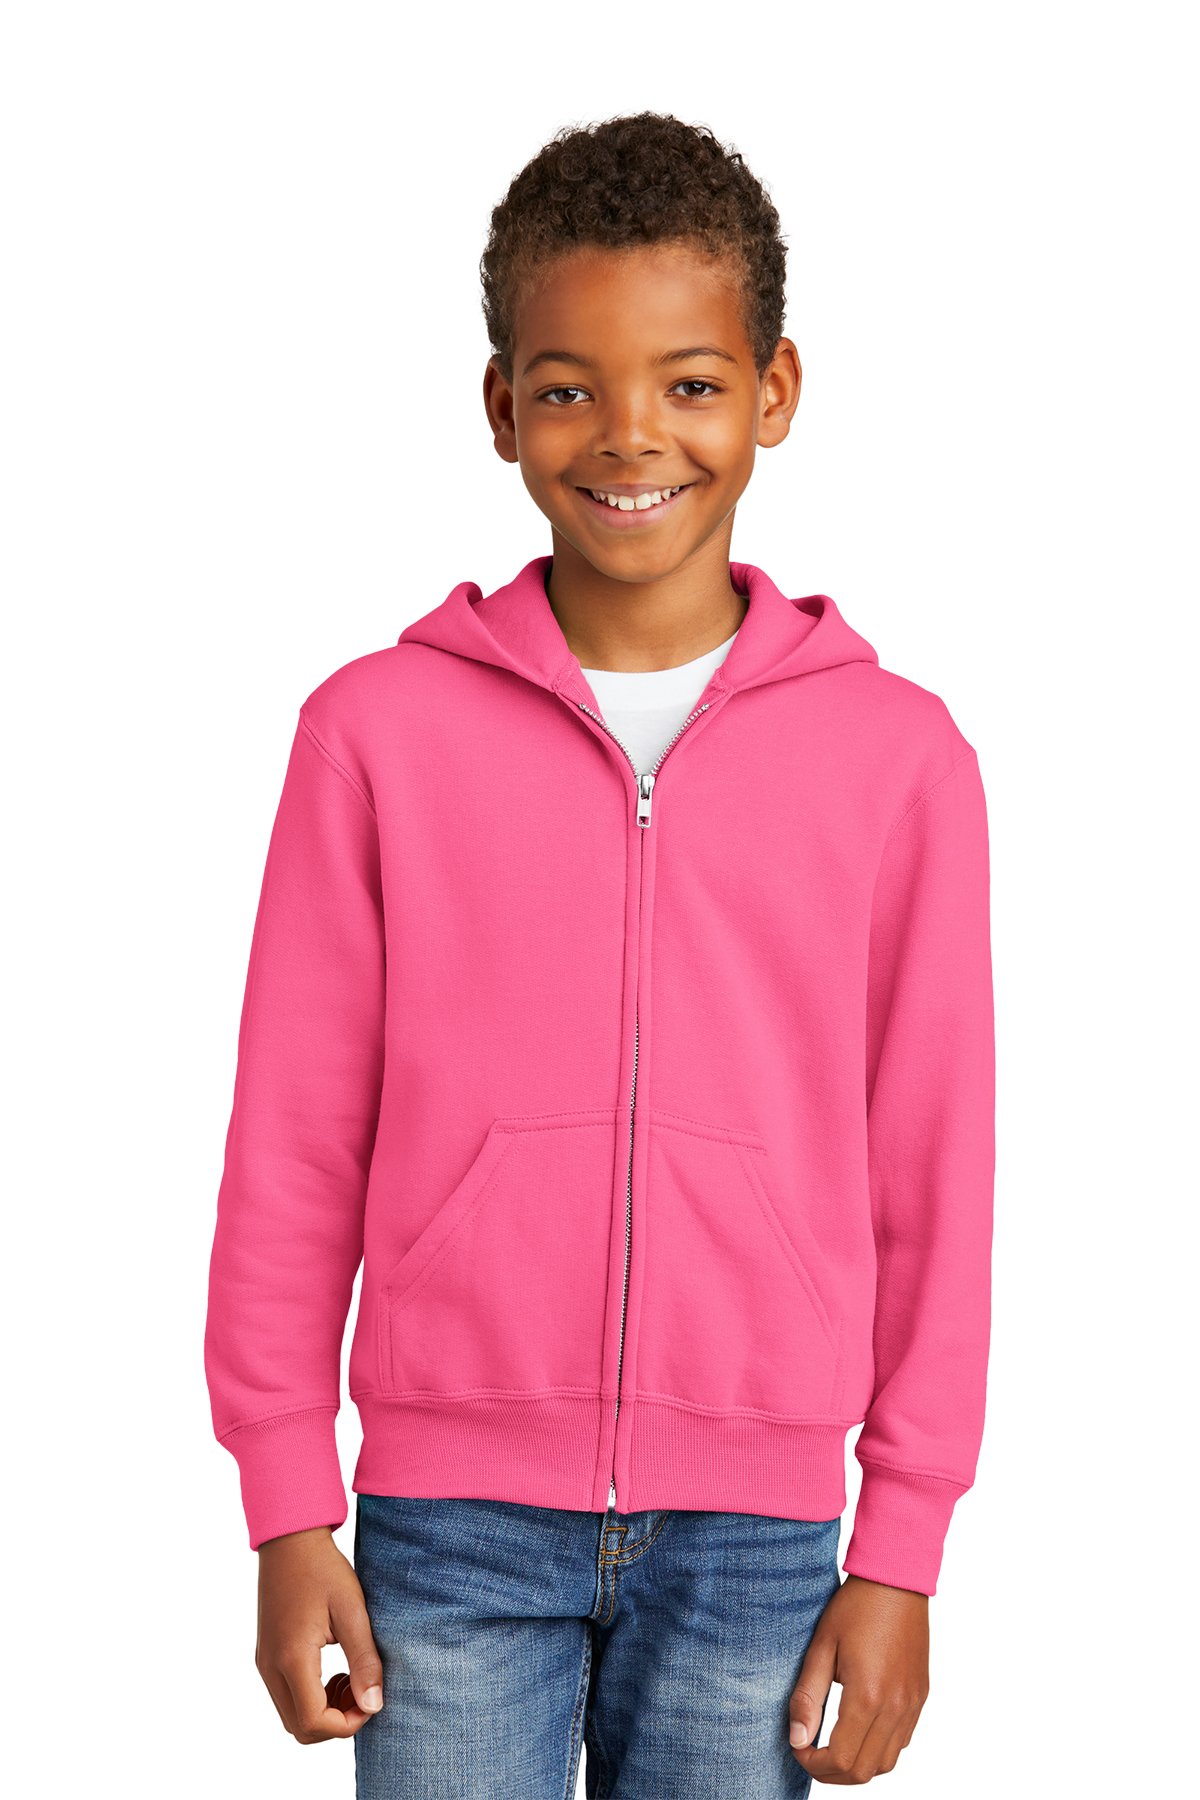 Kid's Rhombus Jacquard Fleece Lining Jacket, Warm Zip Up Hooded